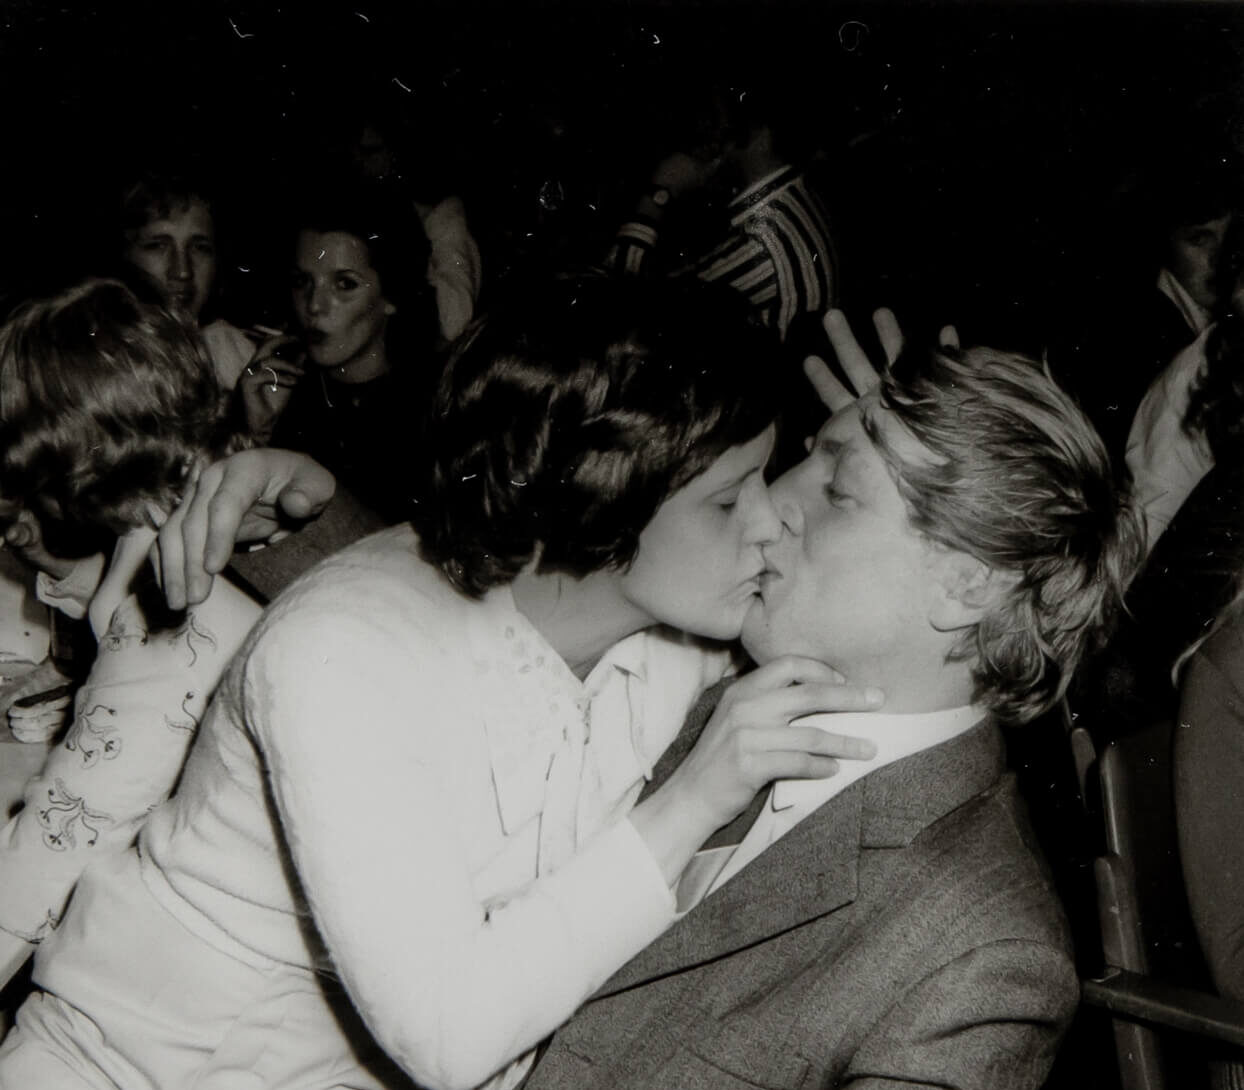 Ein Paar küsst sich, das Foto ist schwarz-weiß.